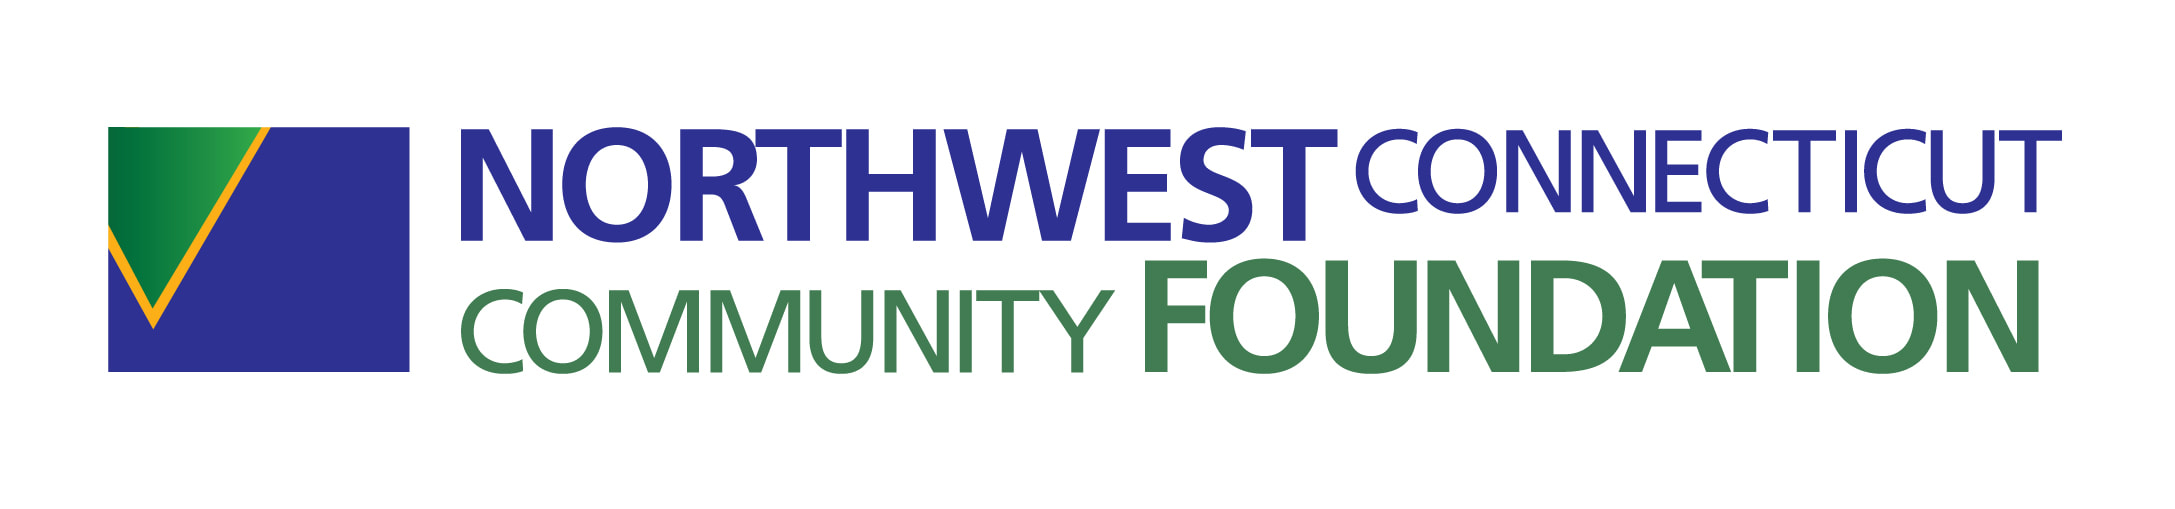 Northwest CT Community Foundation logo and link